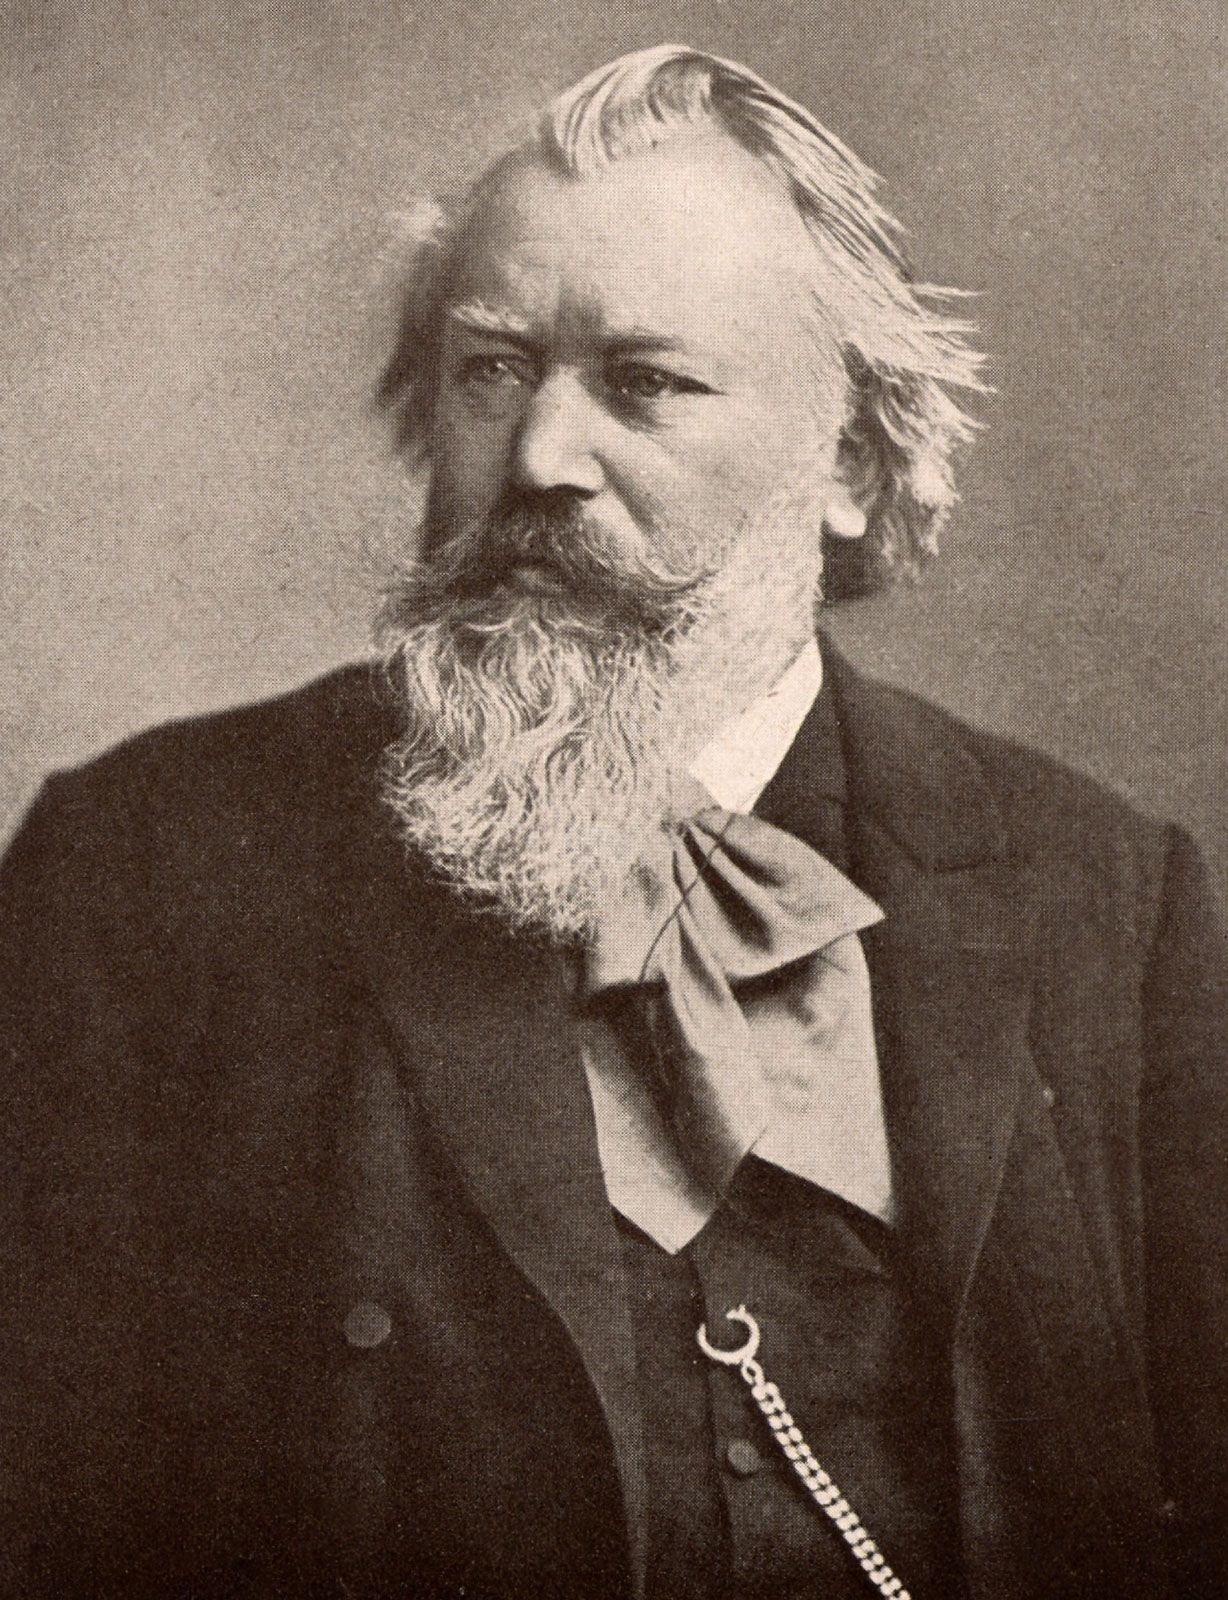  Biografio de Johannes Brahms